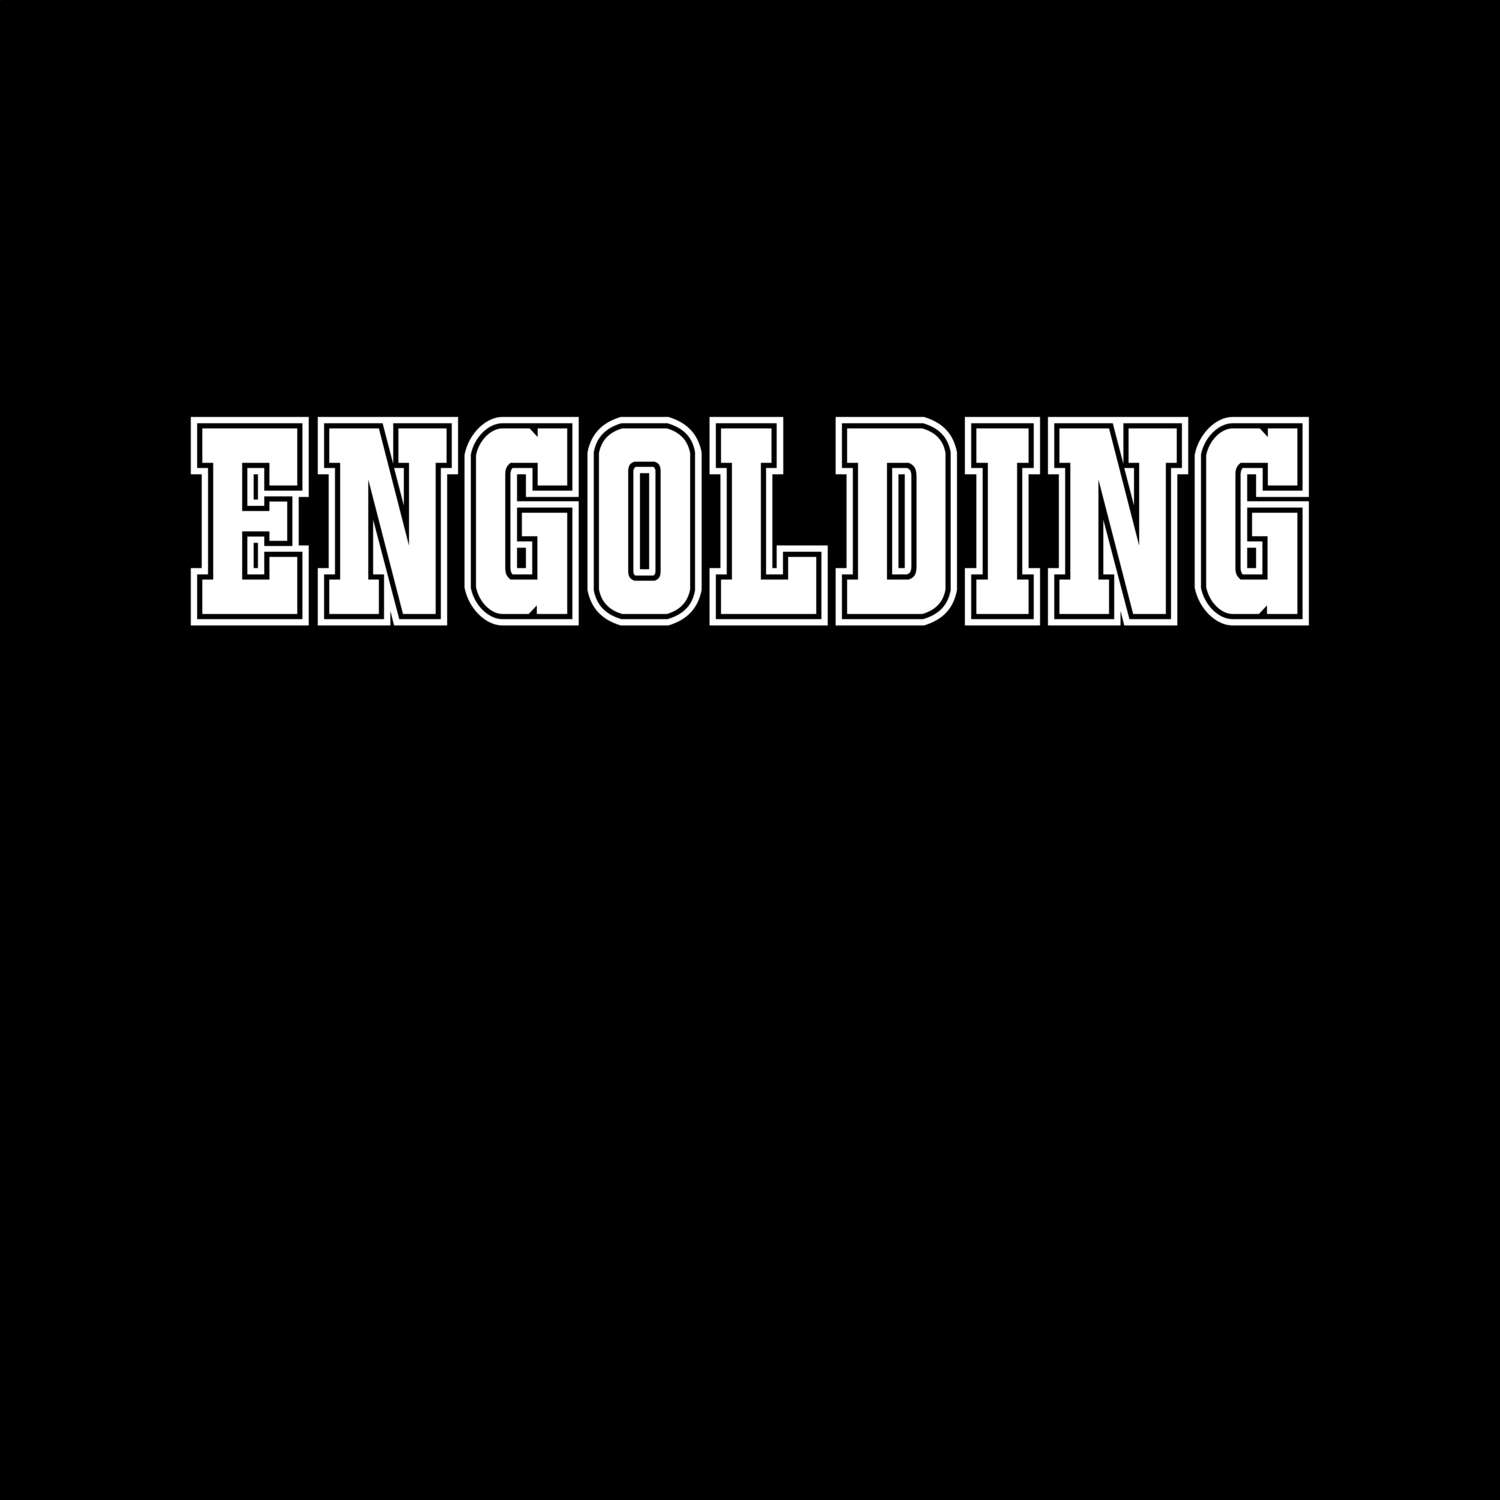 Engolding T-Shirt »Classic«